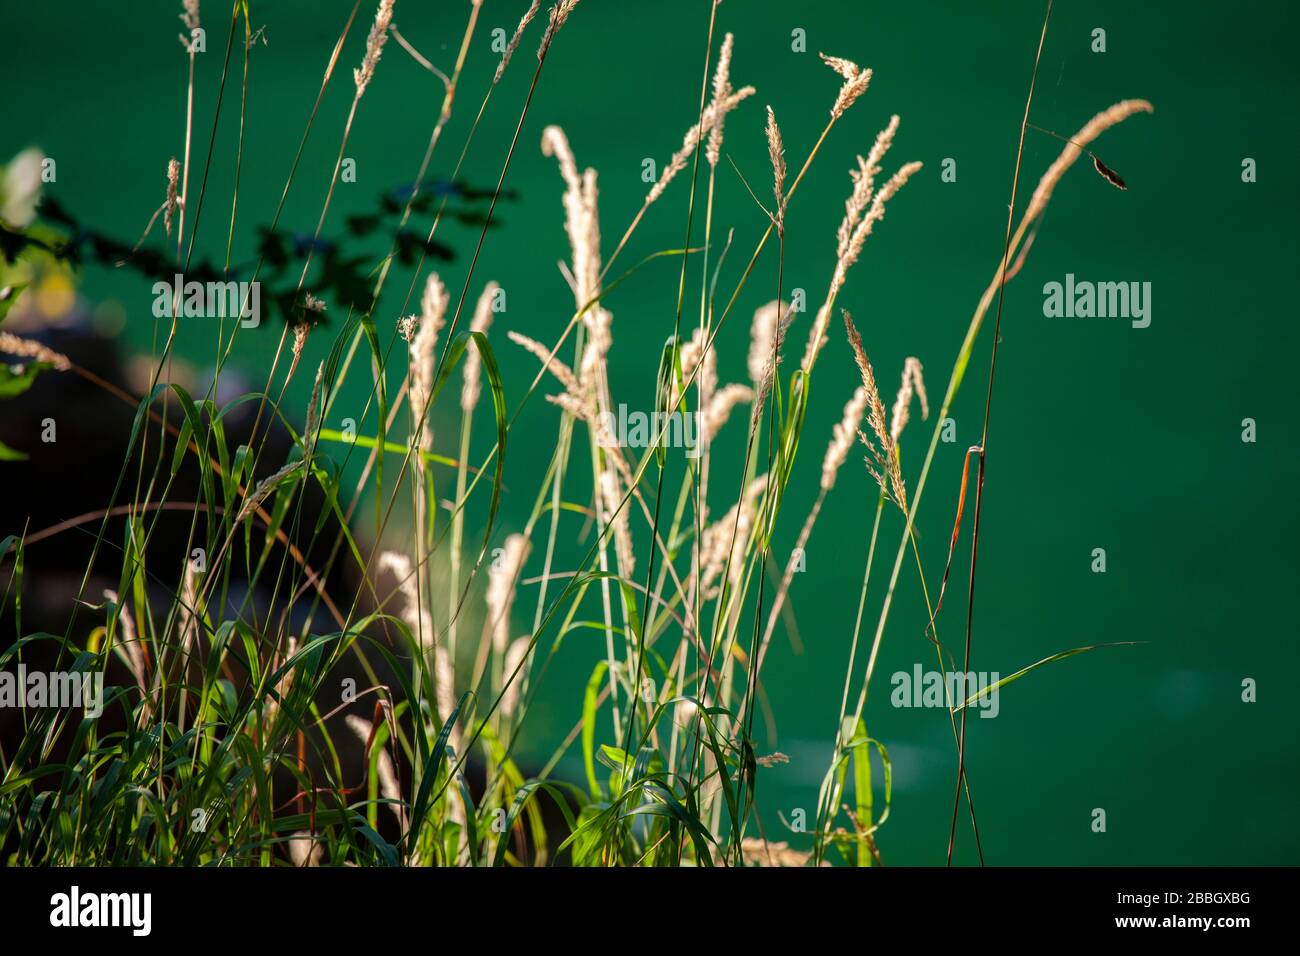 Foto von sonnenbeleuchteten Gräsern im Chiaro-Scuro-Effekt mit smaragdfarbenem Fluss im Hintergrund Stockfoto